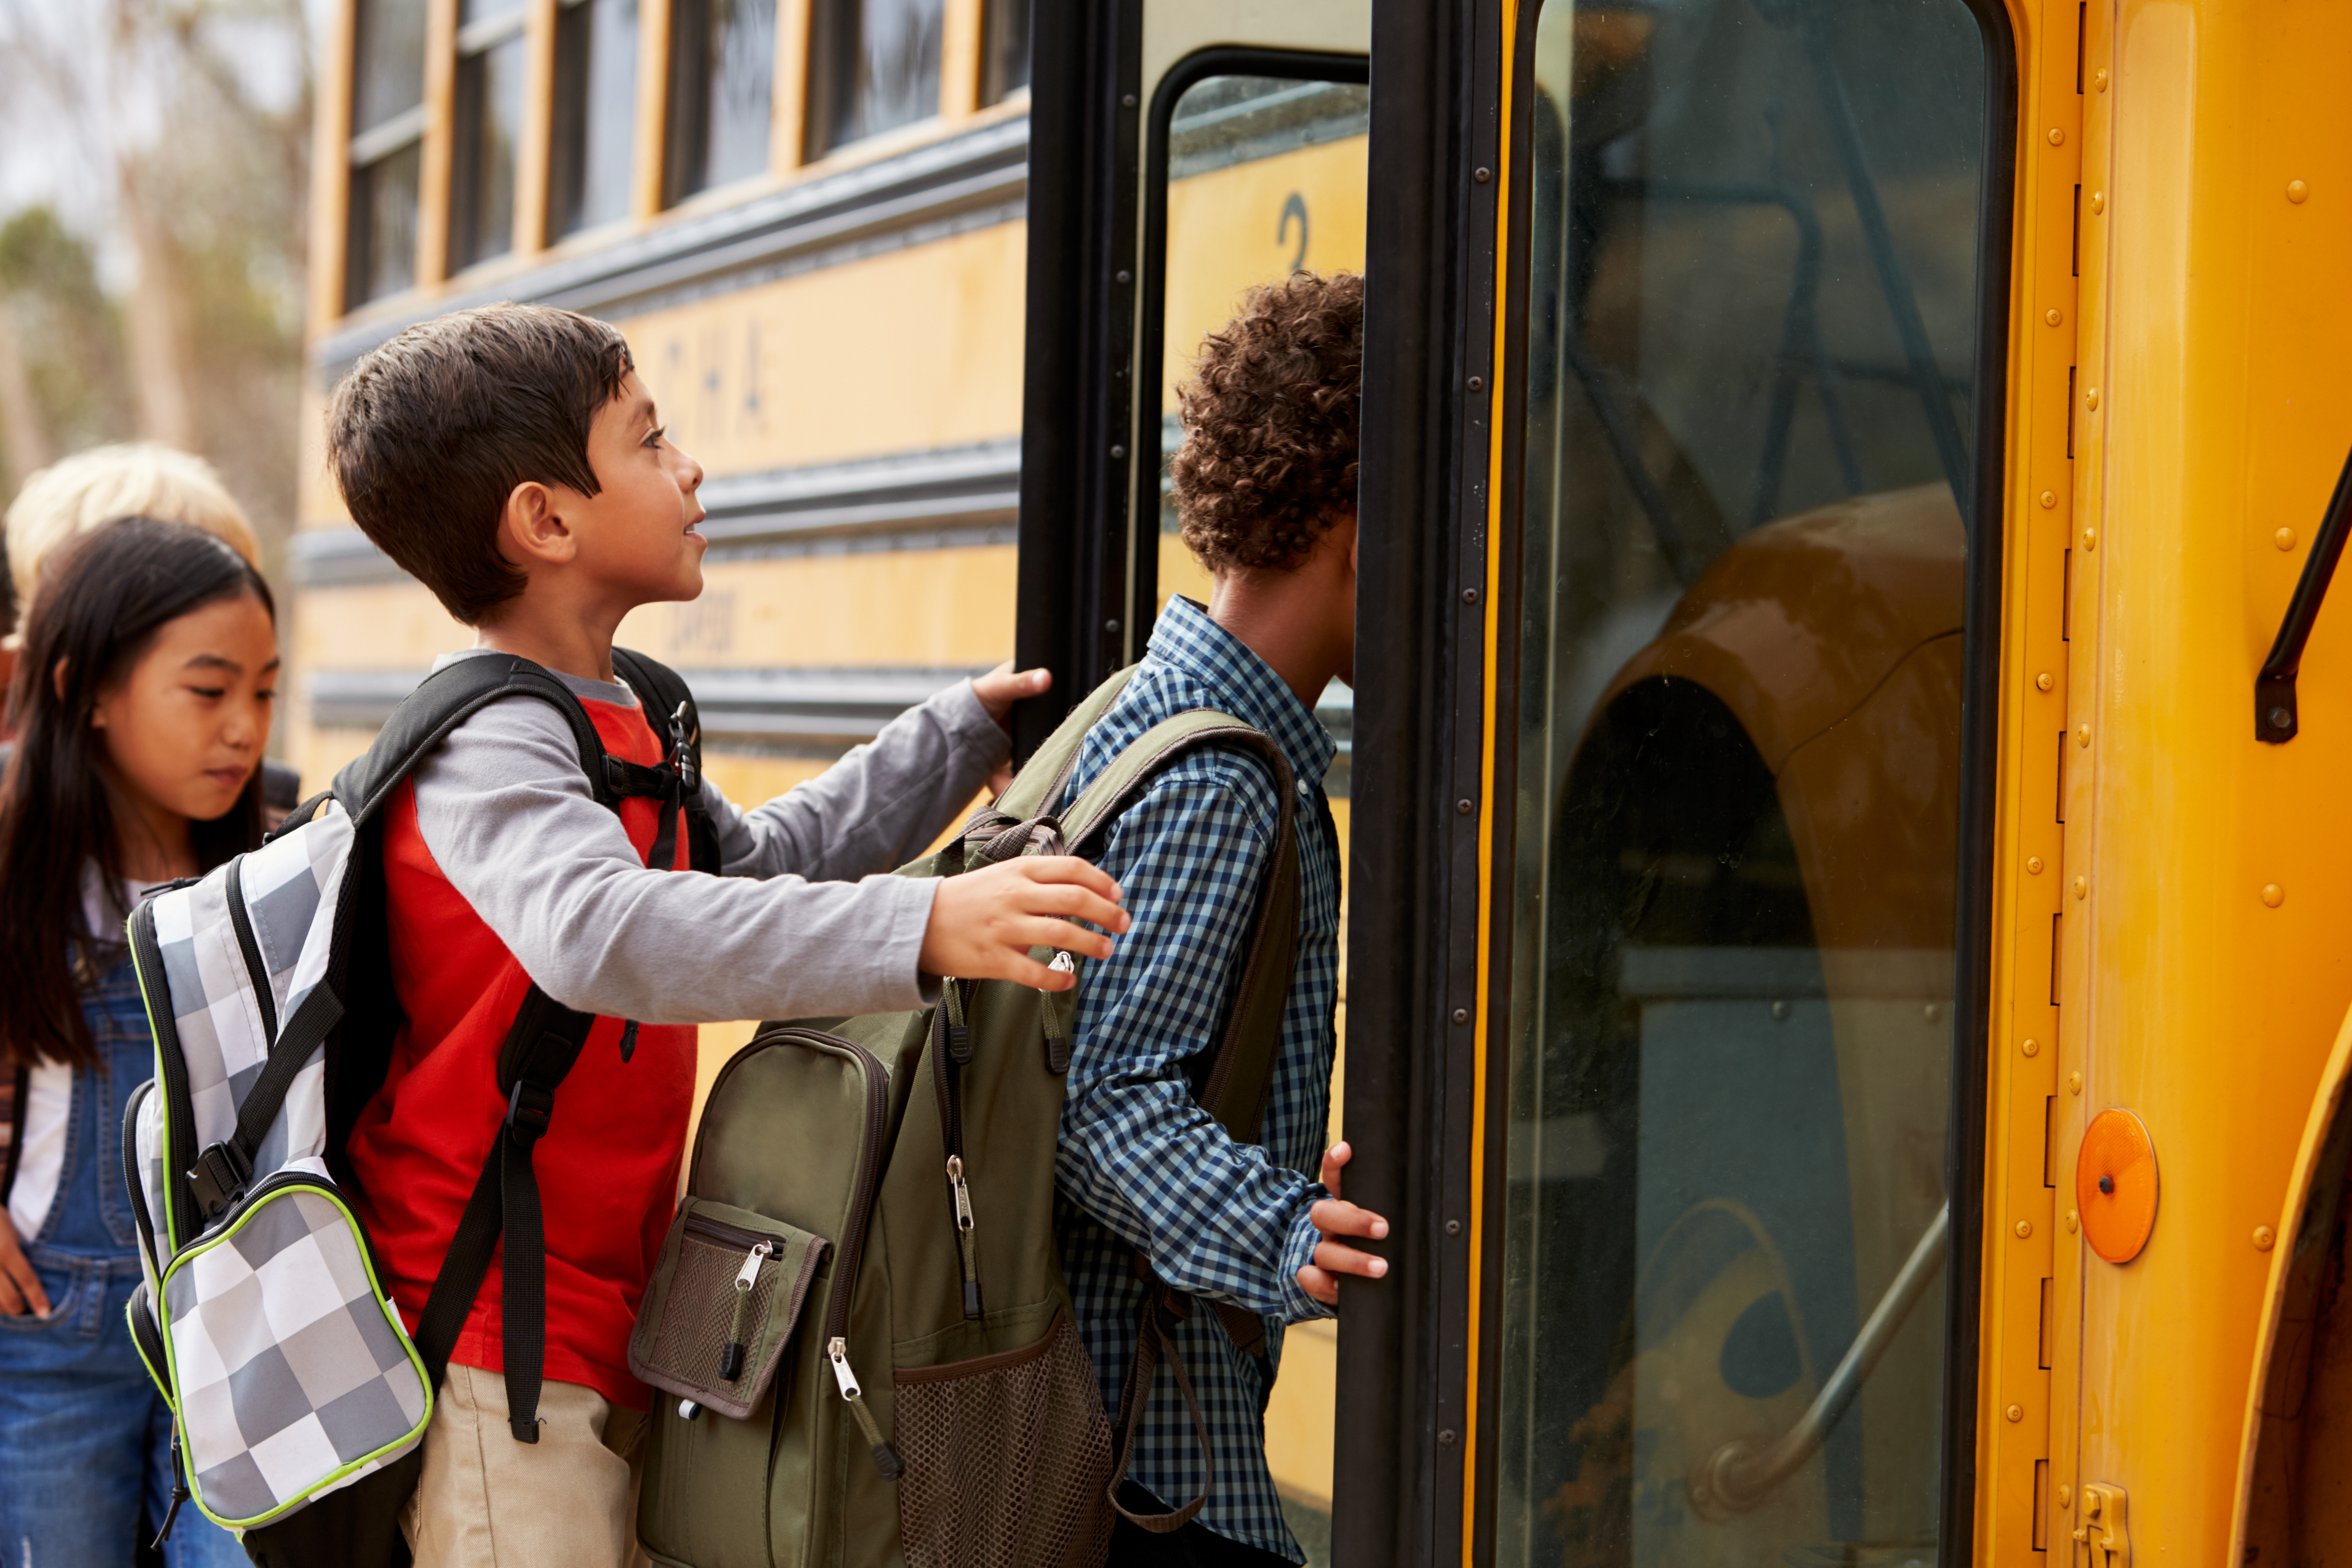 The students go home. Школьники в автобусе. Путешествие школьников. Автобус для детей. Школьники едут в автобусе.